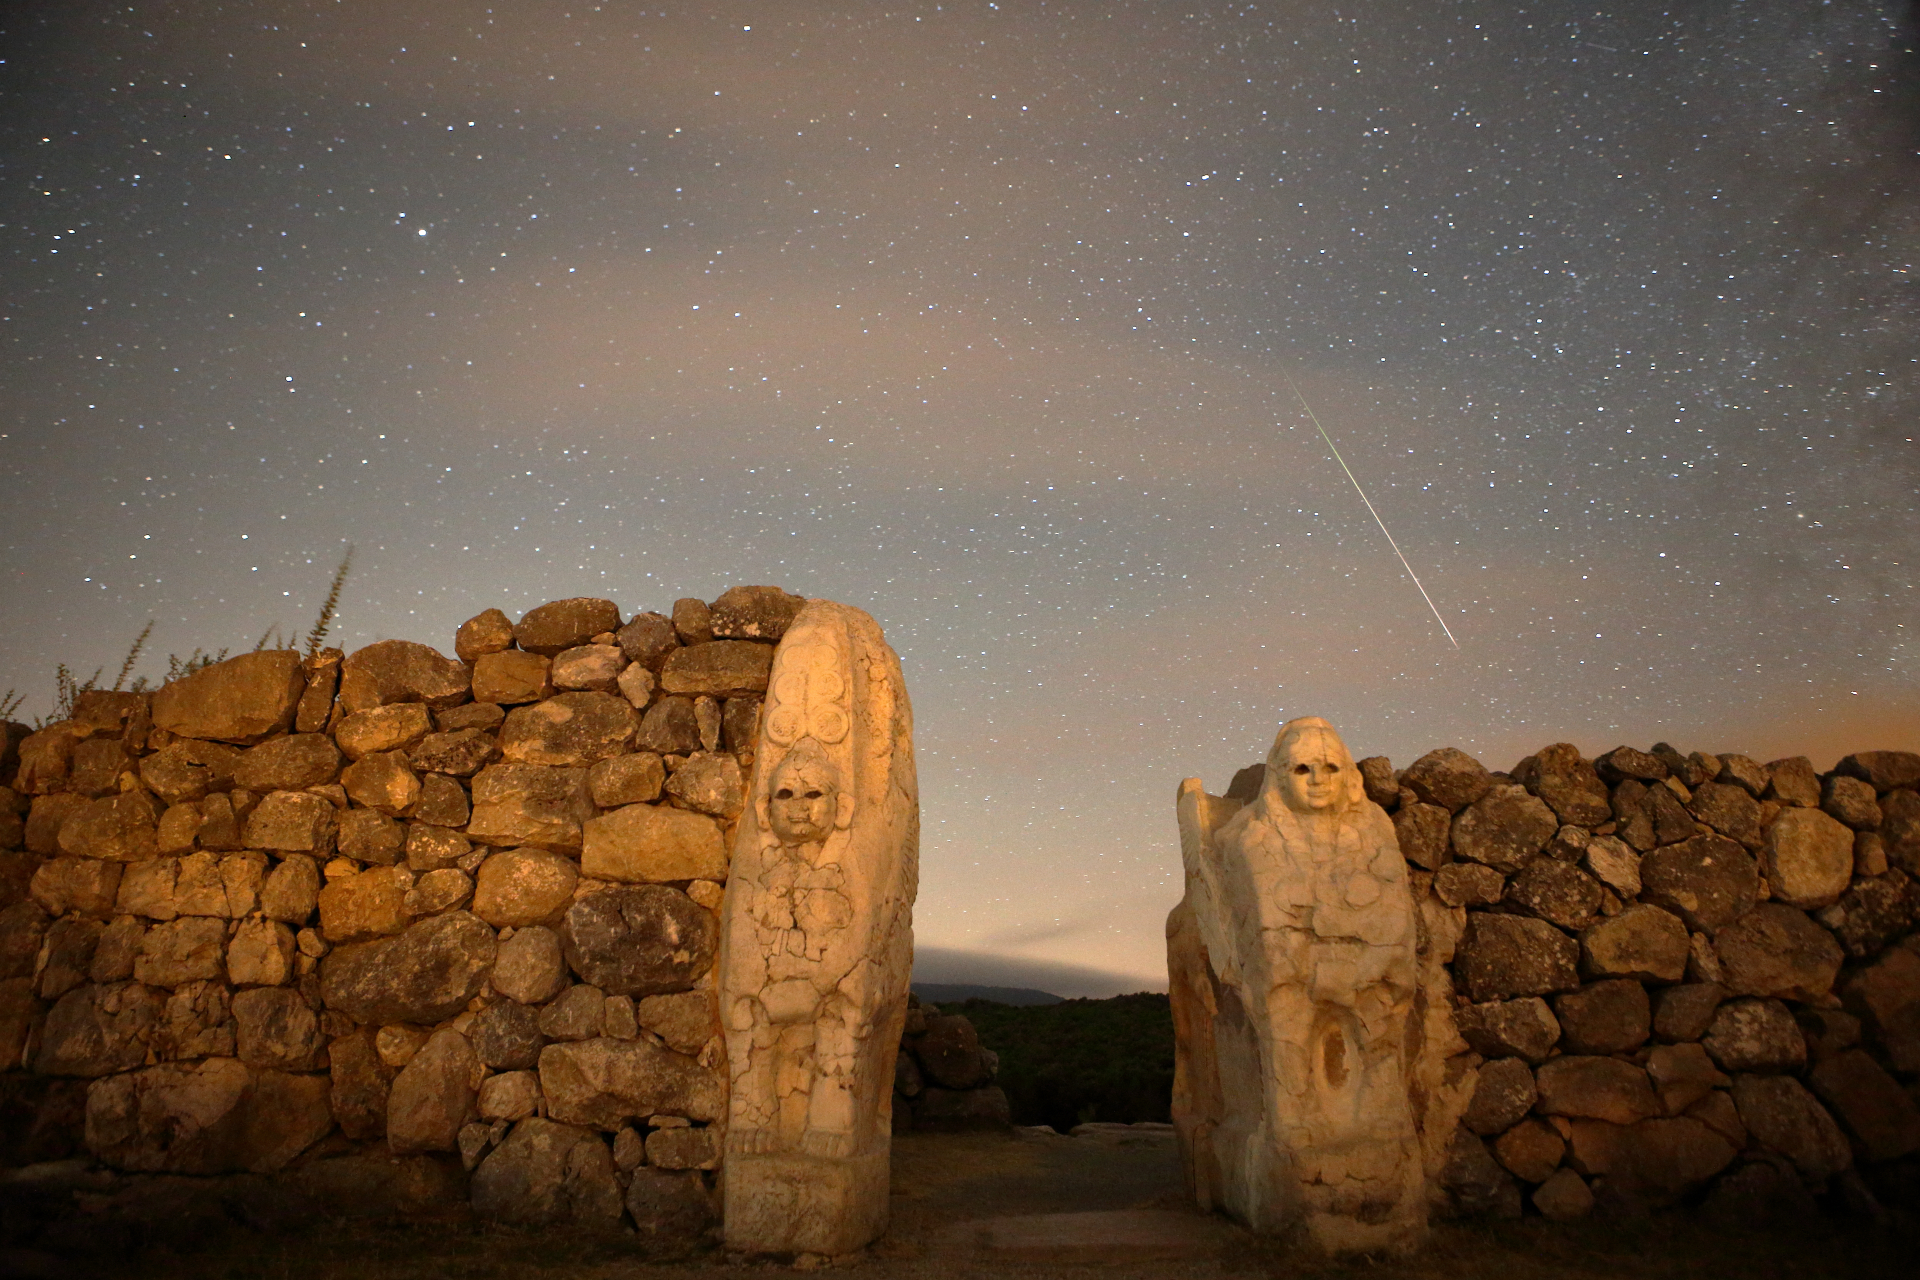 Perseiden-Meteorstreifen am Himmel über einer Steinmauer mit zwei in den Fels gehauenen Figuren.